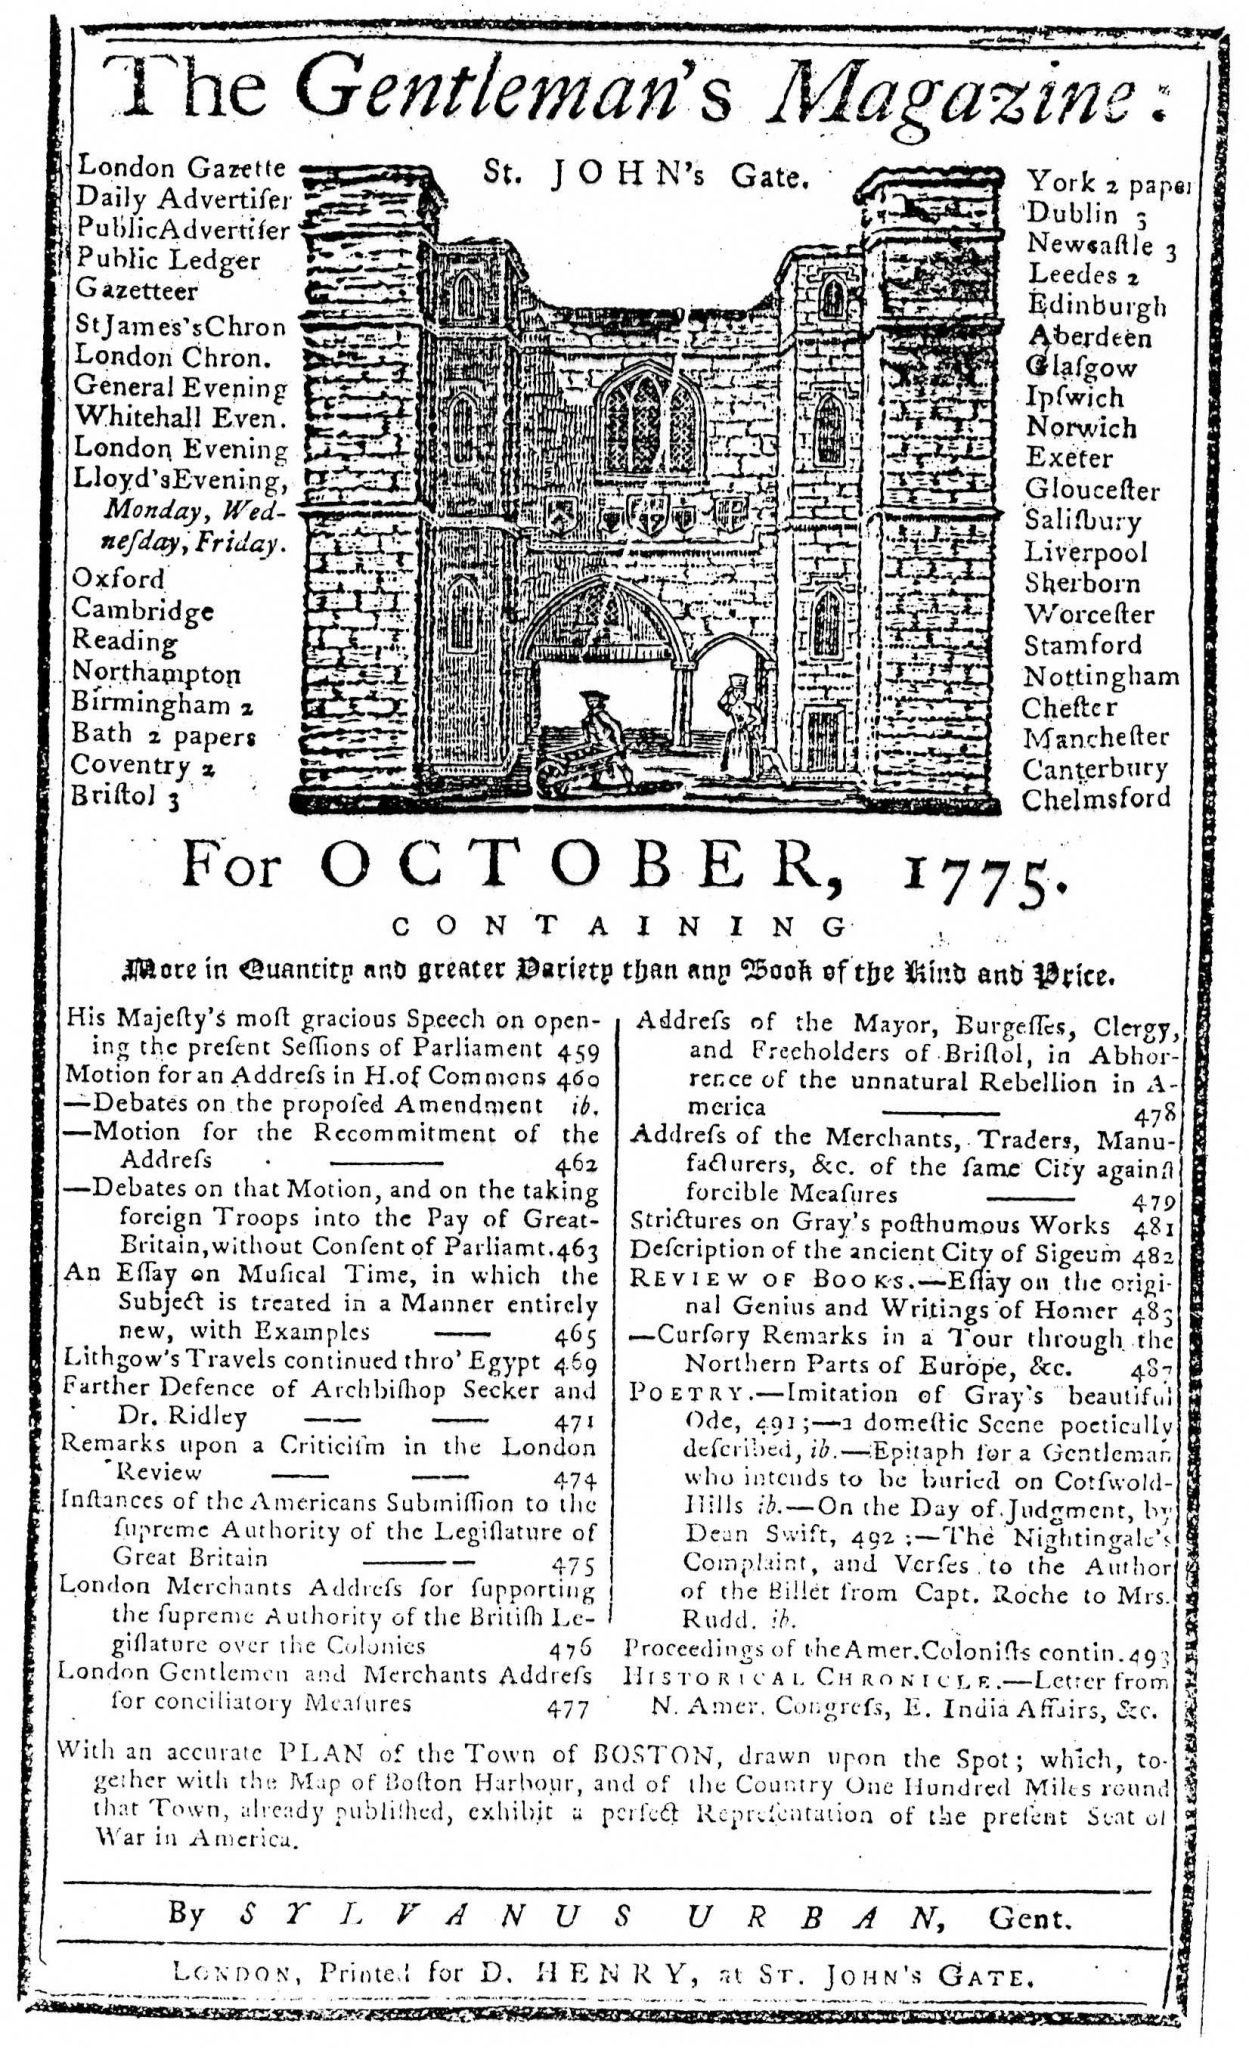 Gentleman's Magazine for October, 1775